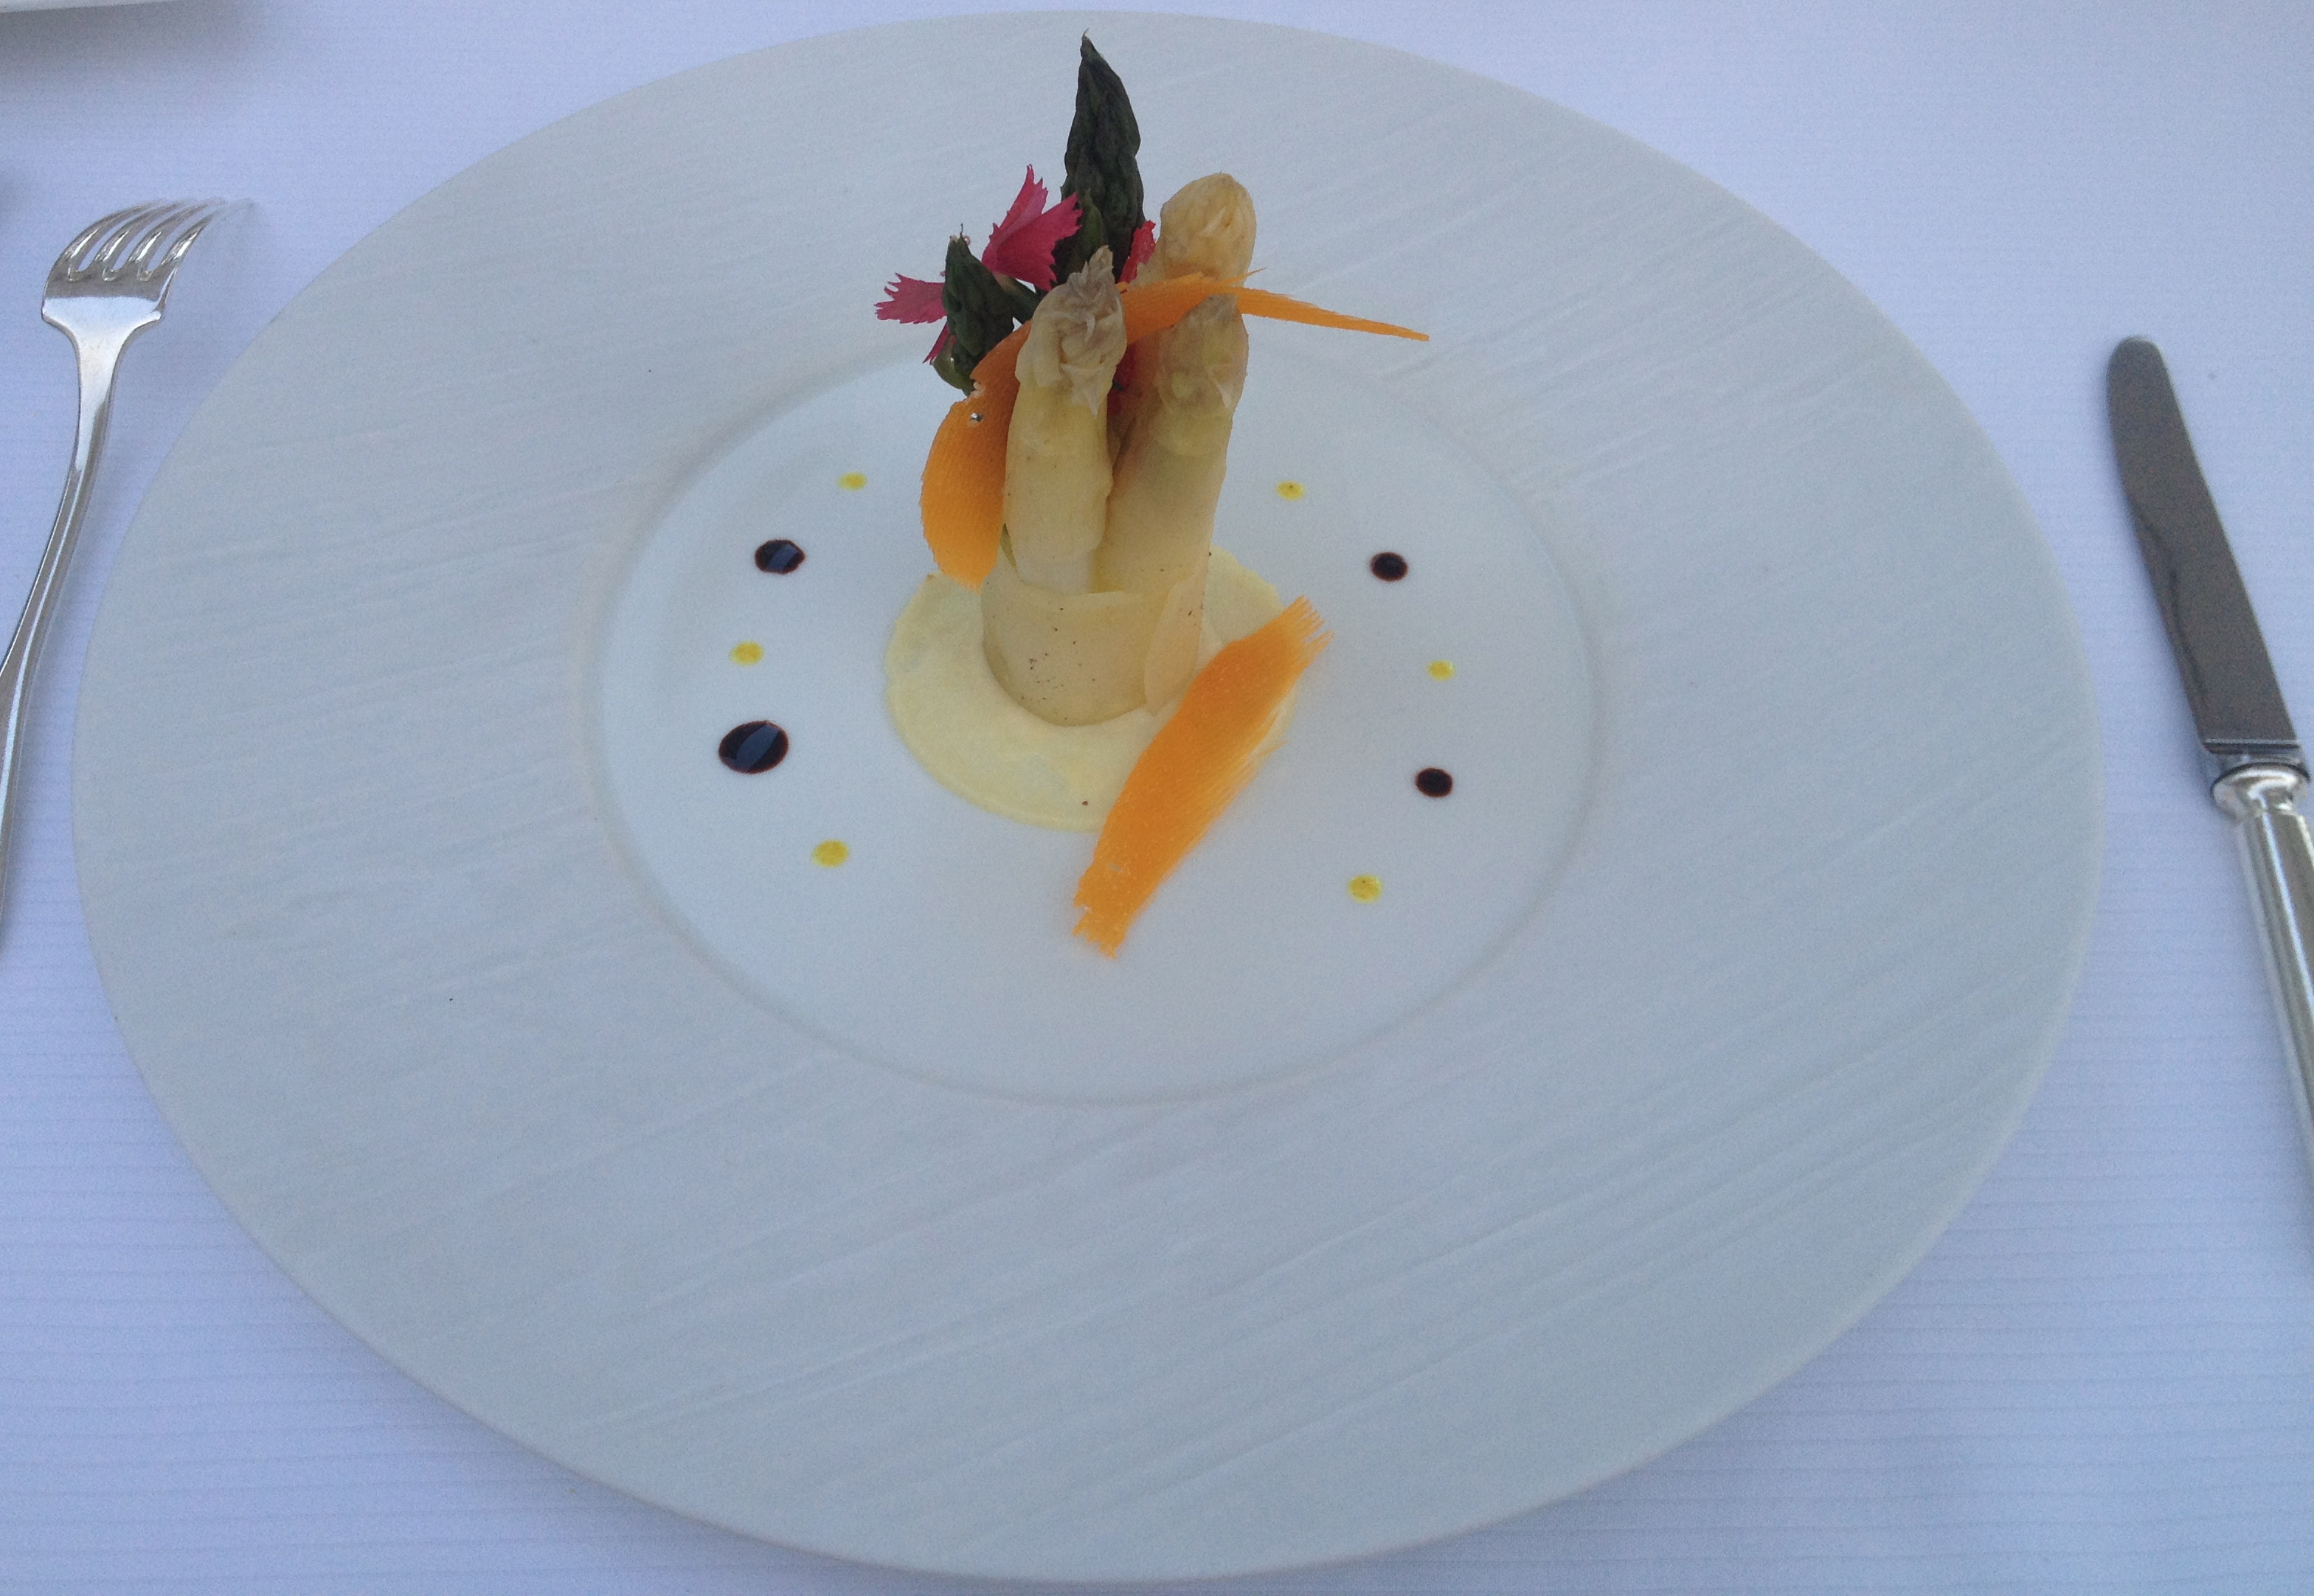 Asparagus Michelin star appetizer at Cap Estel